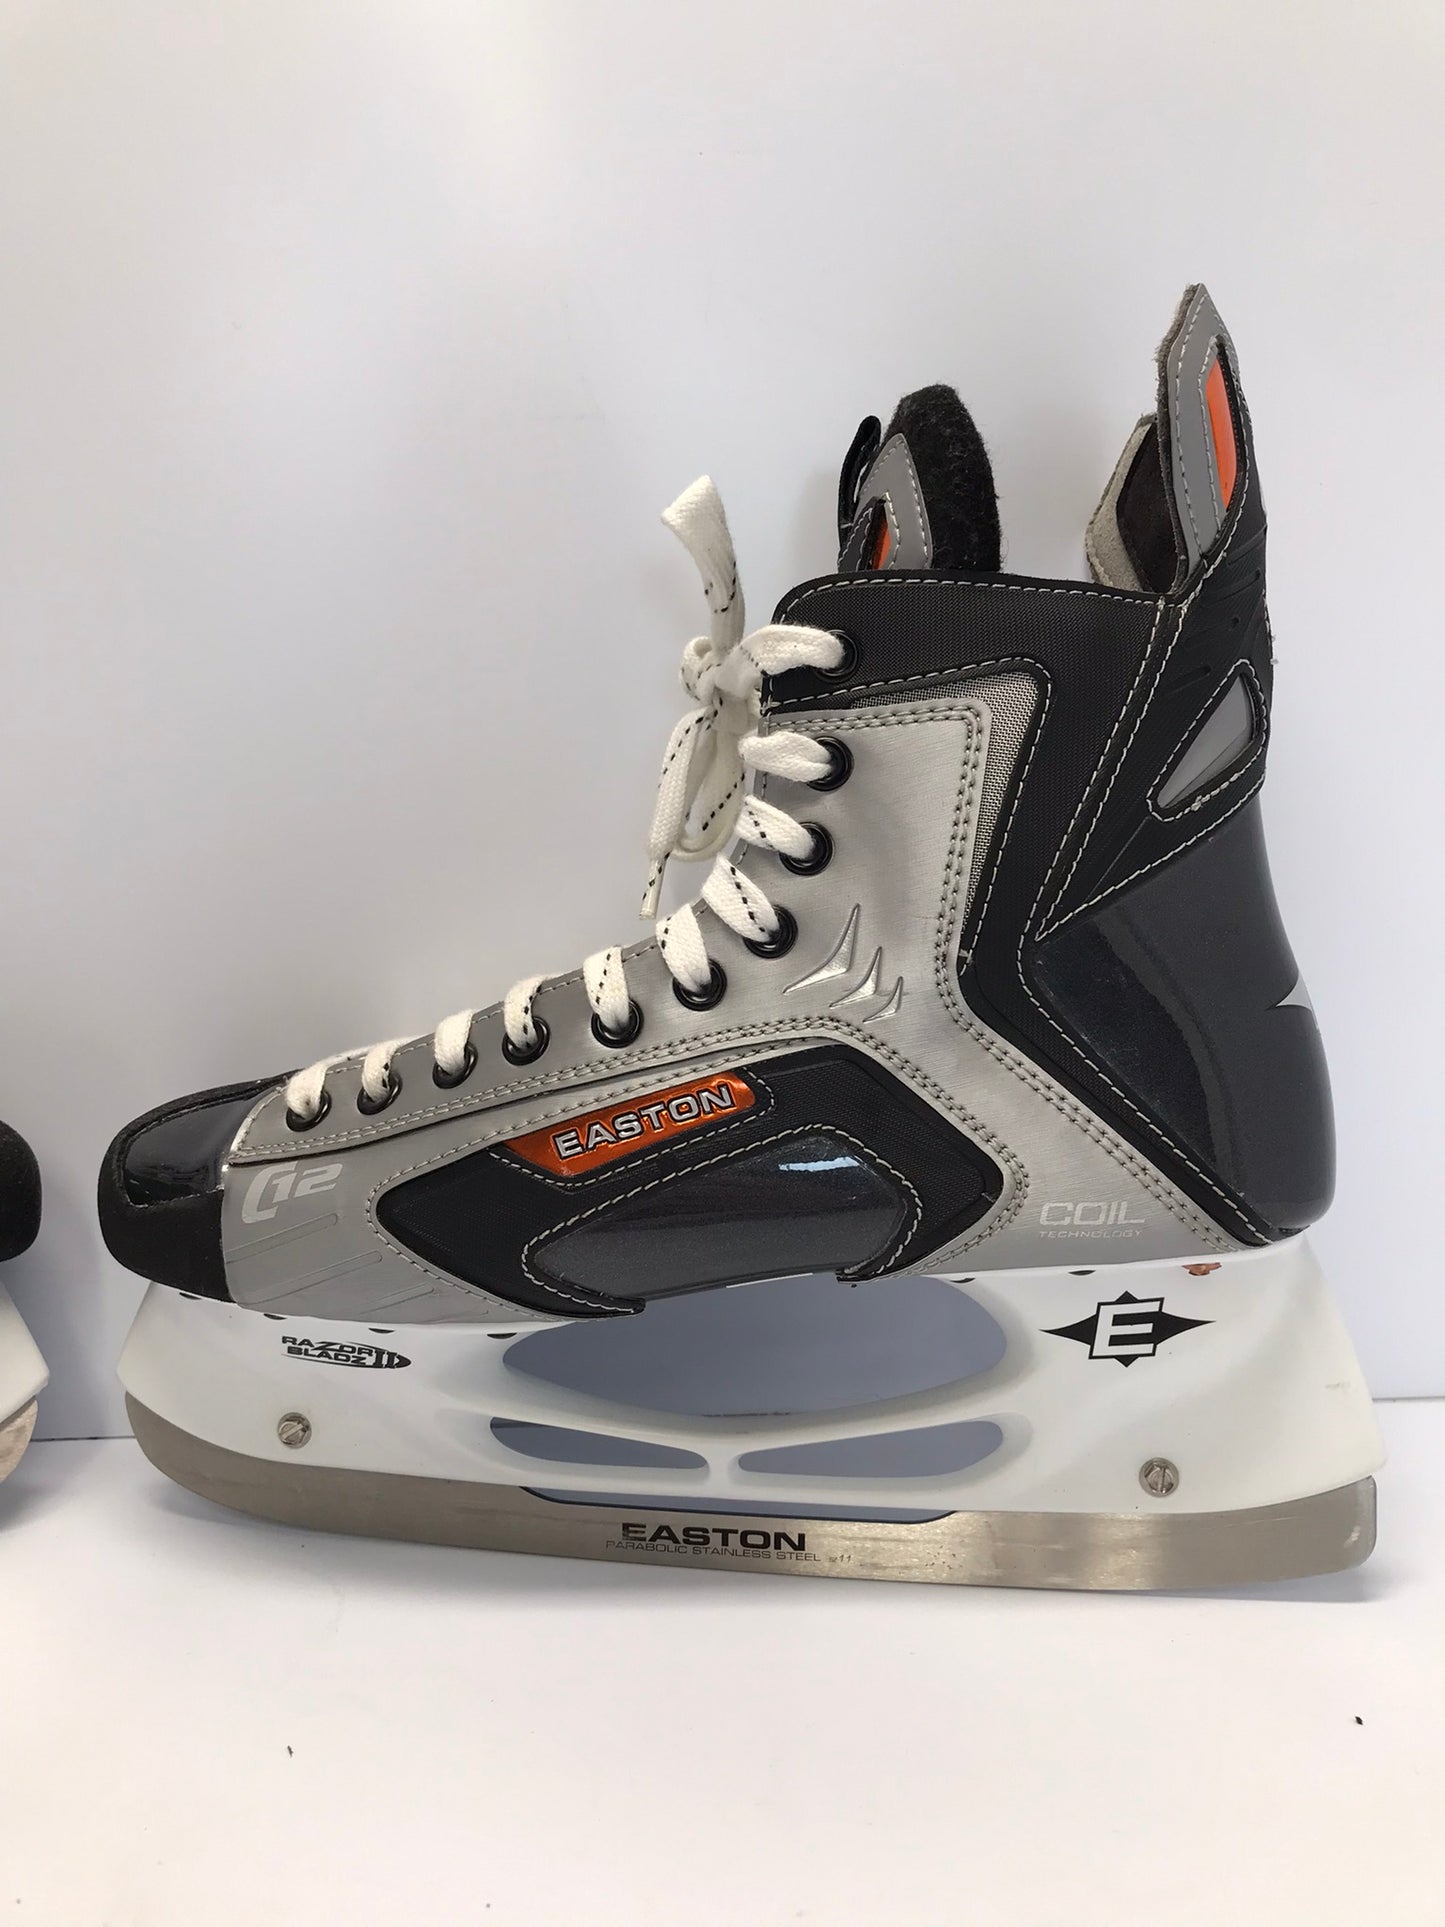 Hockey Skates Men's Size 11.5 Shoe 10 Skate Size Easton Stealth New Demo Model